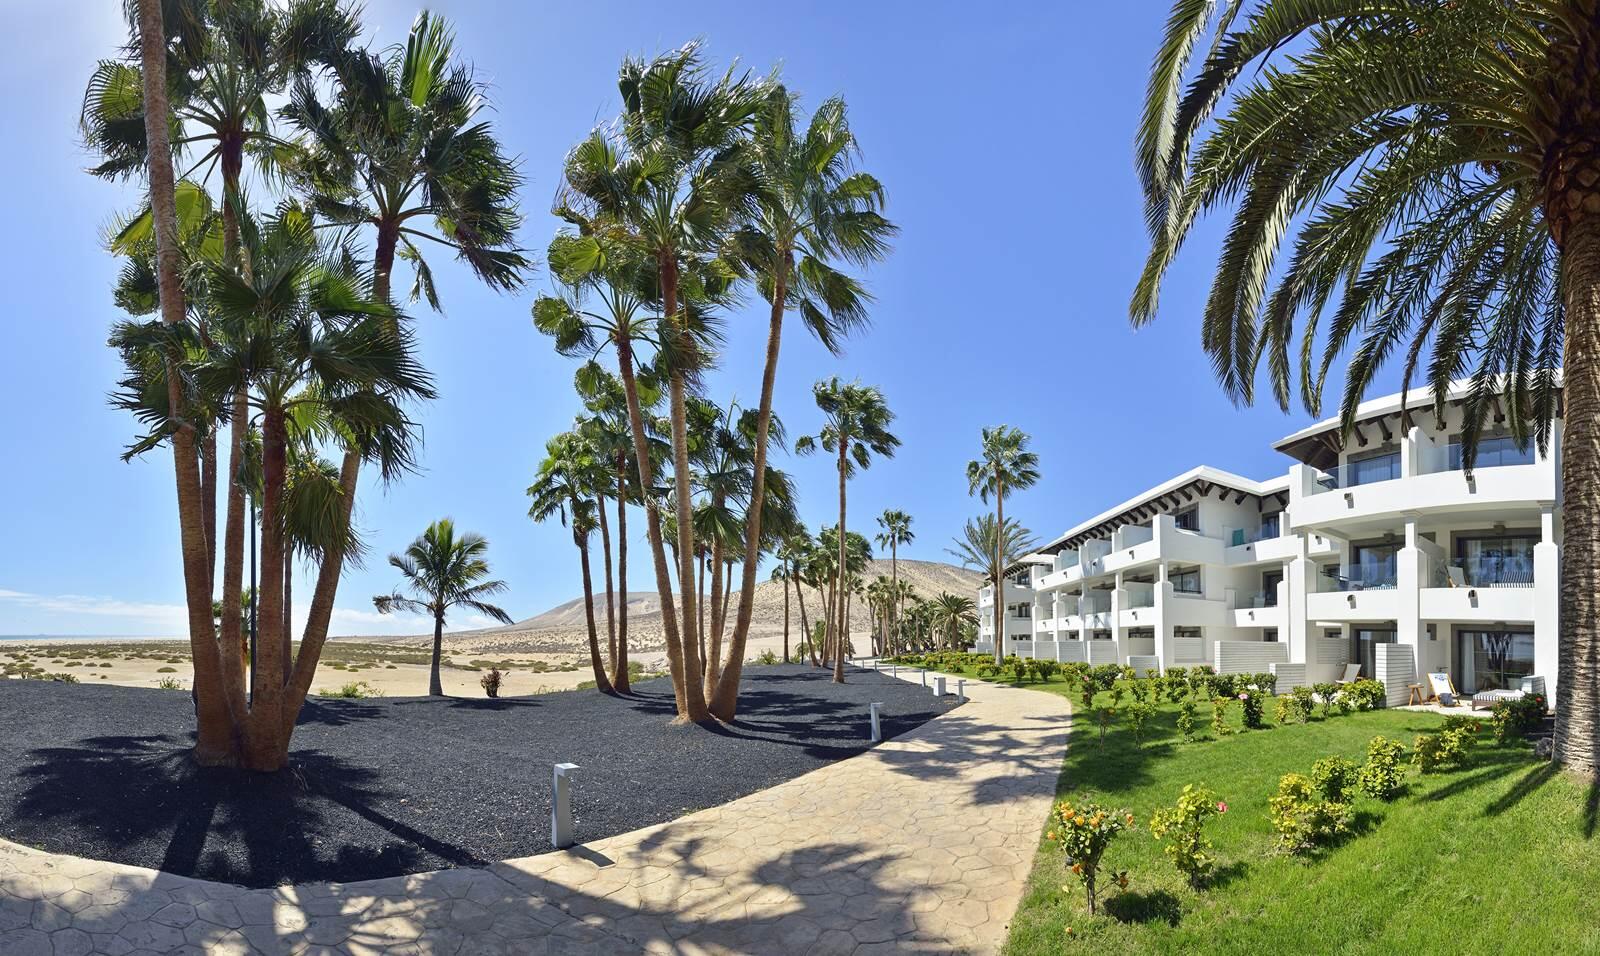 Sol Beach House at Melia Fuerteventura